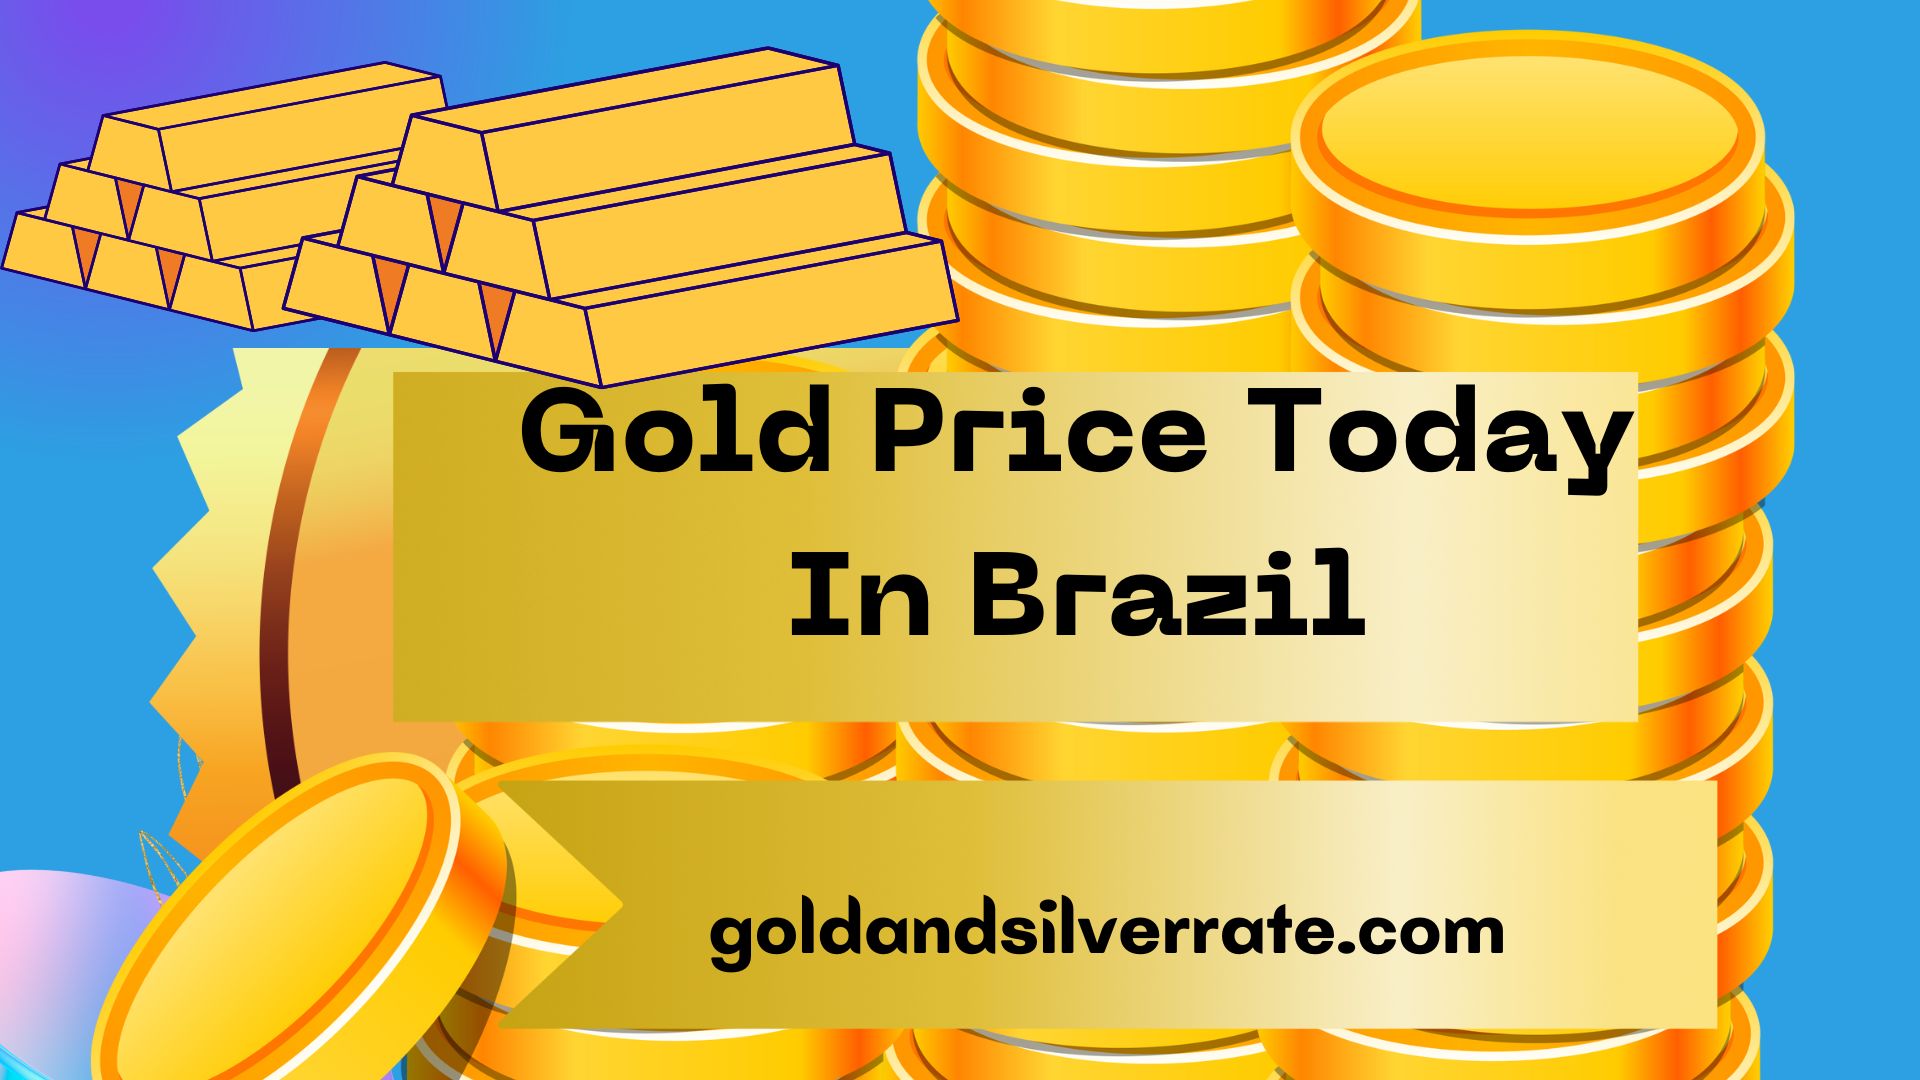 Gold Price Today In Brazil